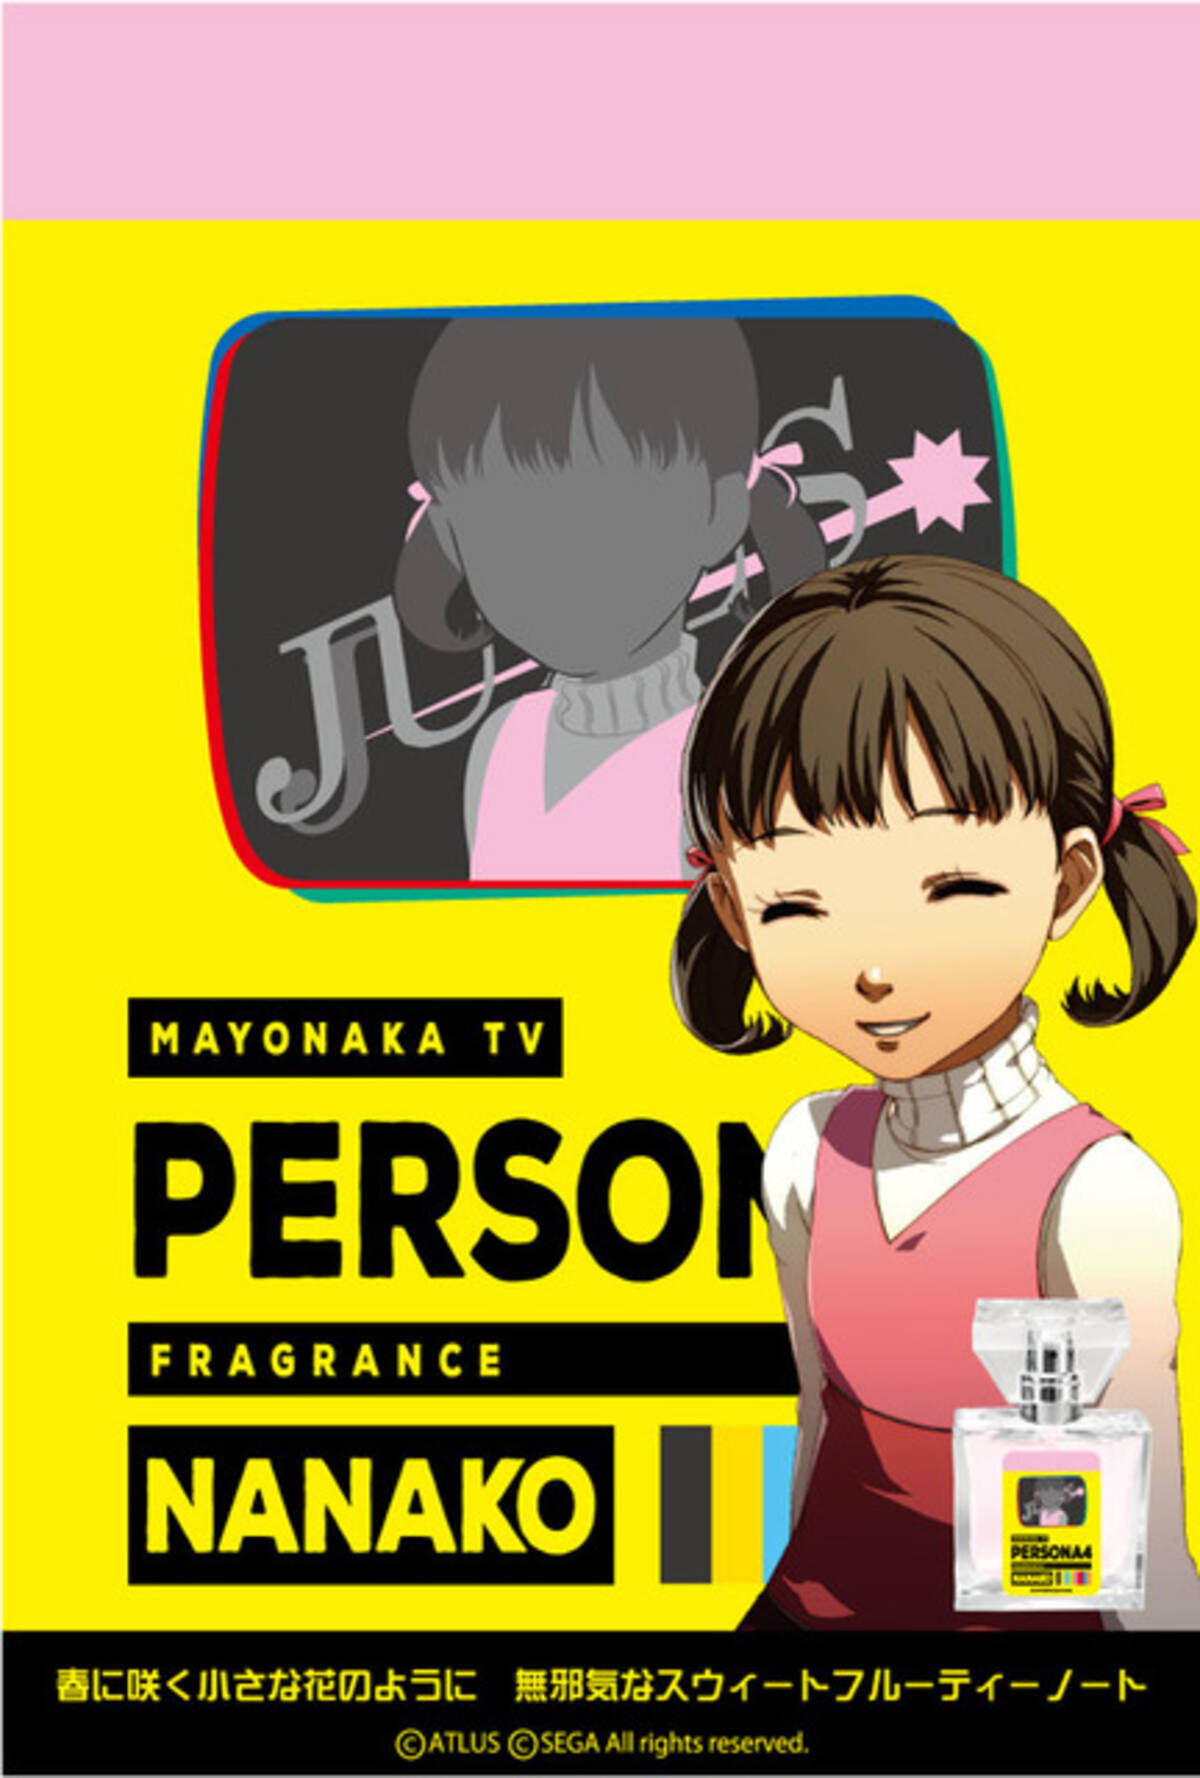 ペルソナ シリーズ 堂島菜々子 芳澤かすみら追加キャラクターがフレグランスになって登場 年5月30日 エキサイトニュース